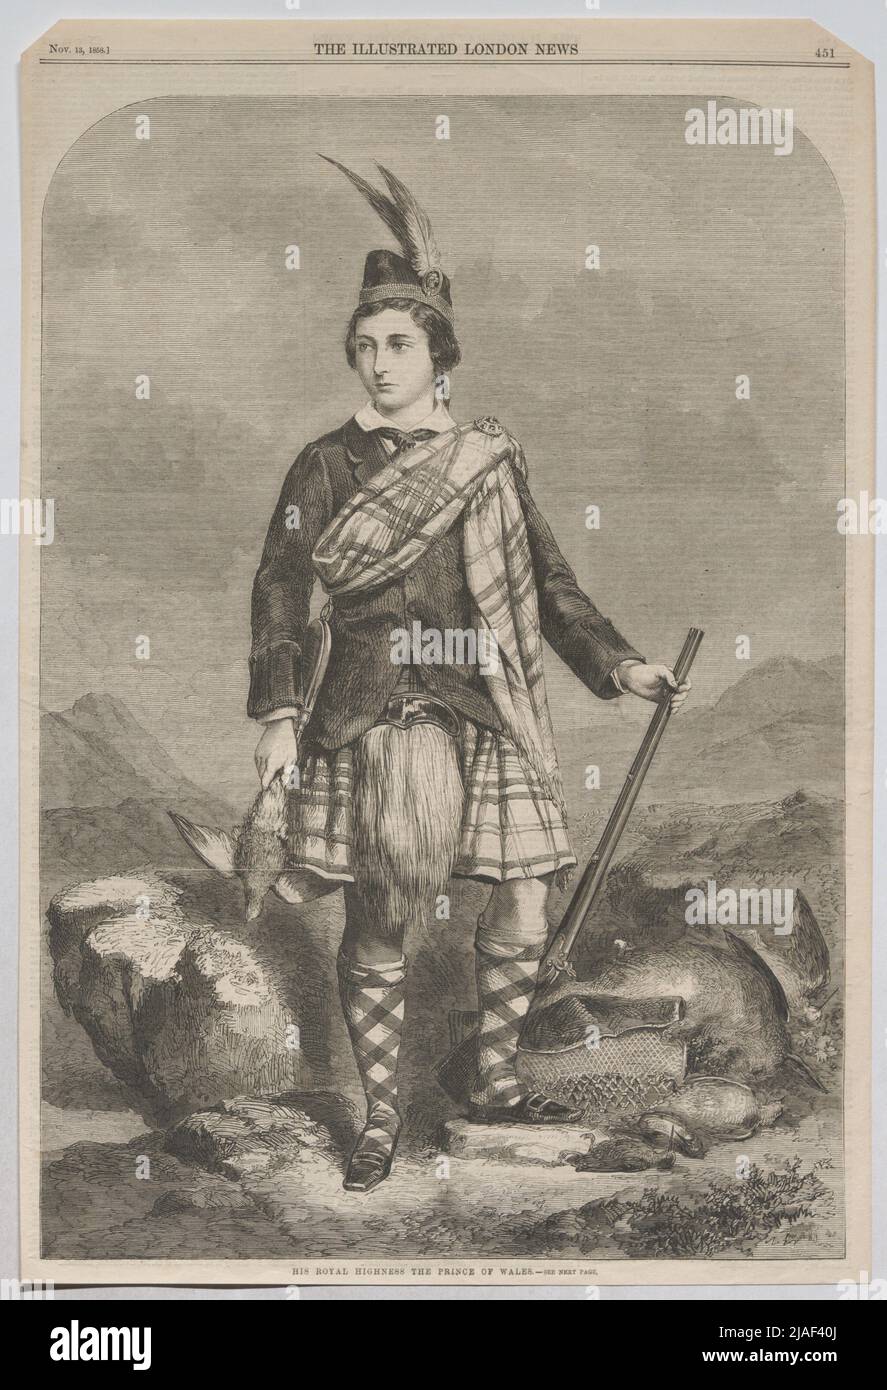 Son altesse royale les princes du pays de galles. Le prince de Galles à la chasse (tiré de « The Illustrated London News »). Inconnu Banque D'Images